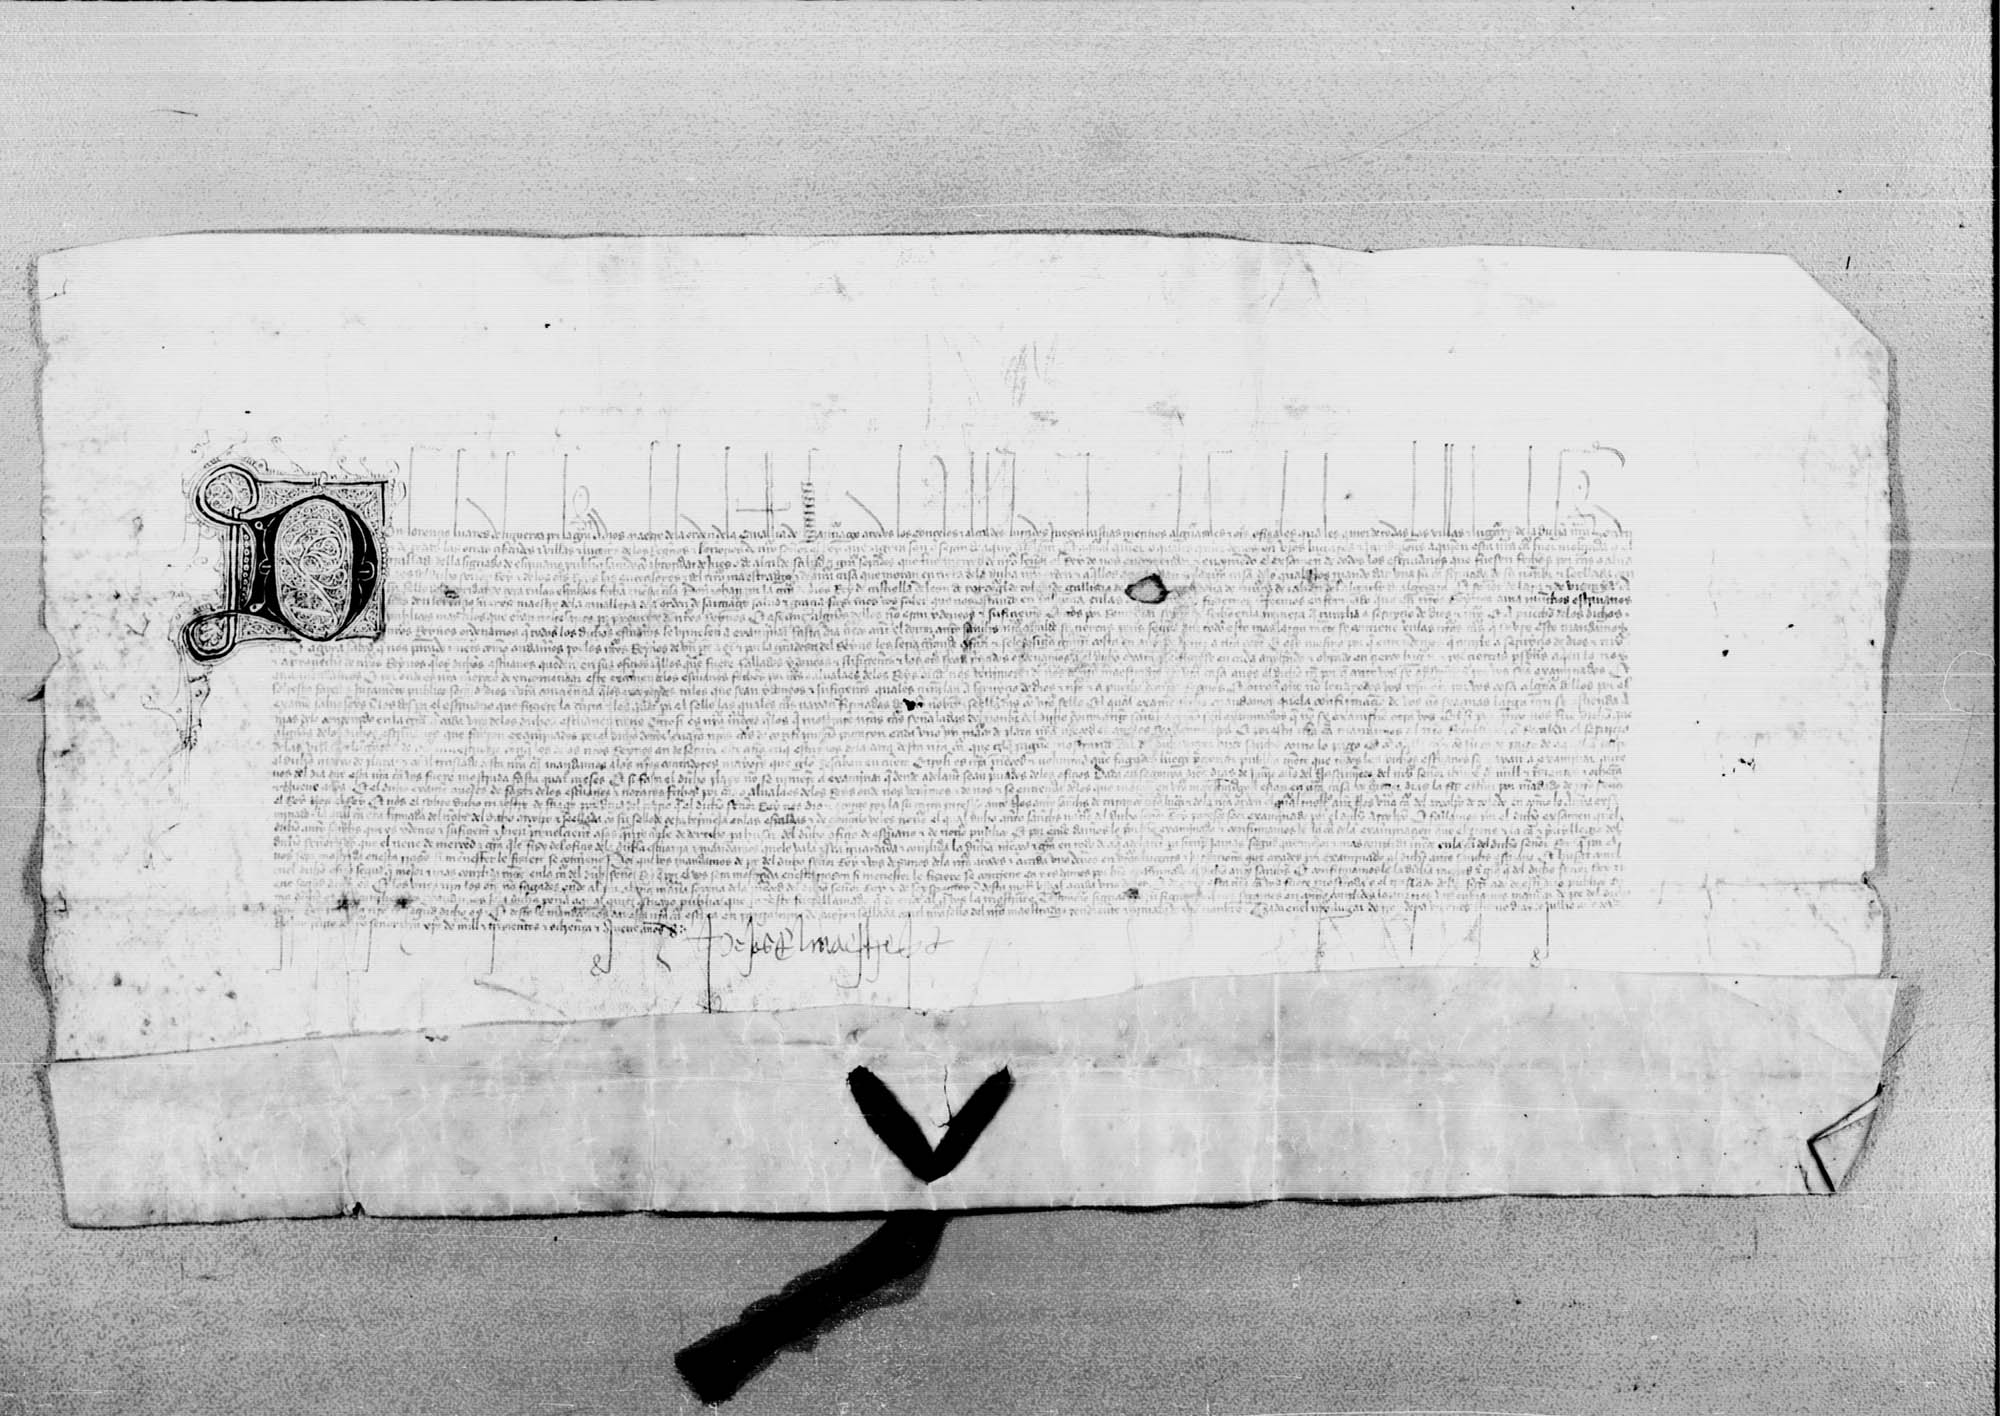 Carta de Lorenzo Suárez de Figueroa, maestre de la Orden de Santiago, dirigida a todos los concejos, alcaldes y demás oficiales de las villas y lugares de la Orden para que obedezcan la carta enviada por Juan II sobre la provisión del oficio de escribano.